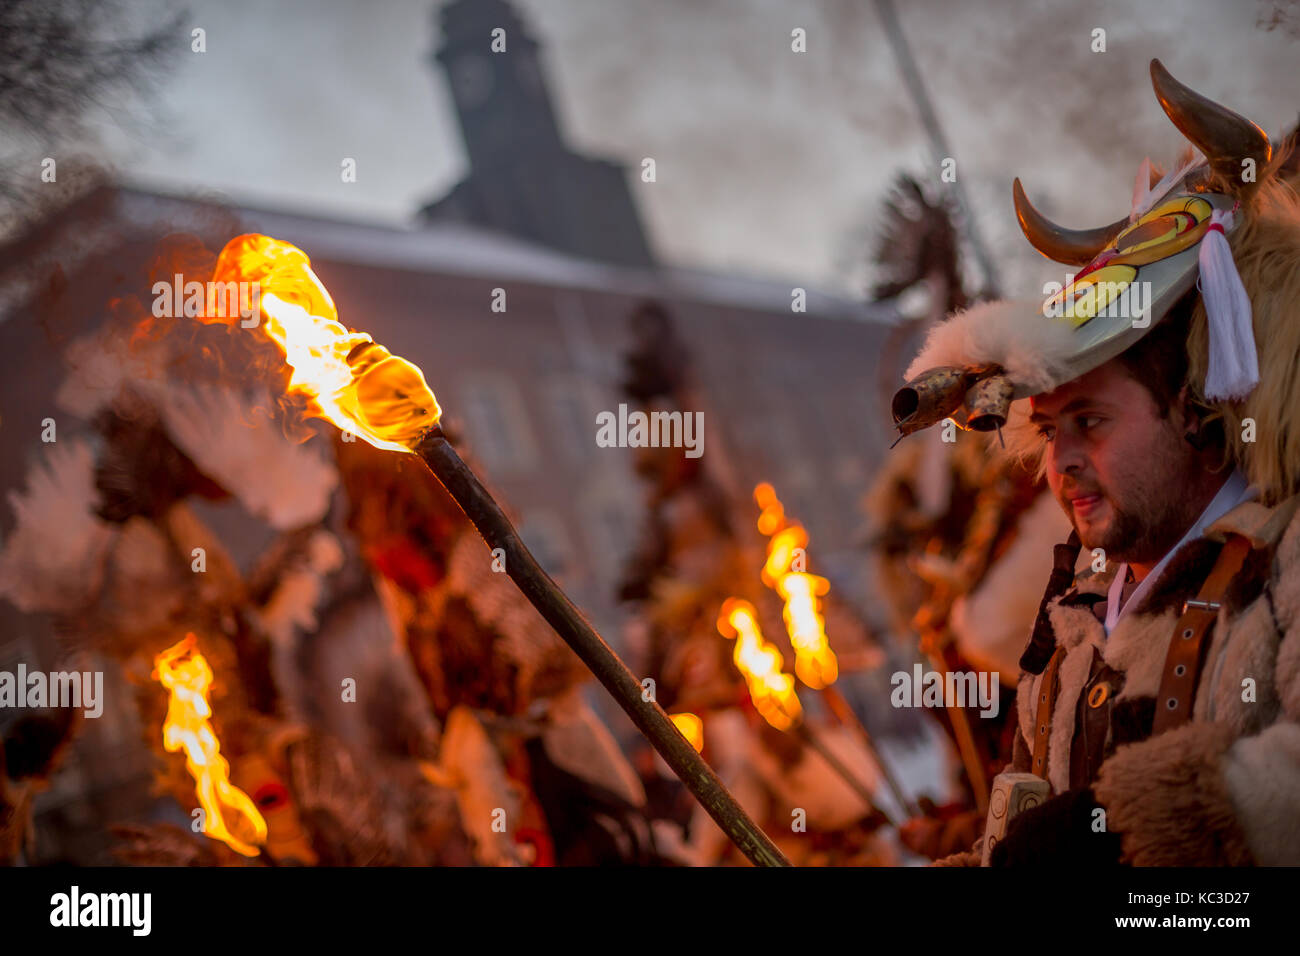 Pernik, Bulgarie - 27 janvier 2017 : participant à la fourrure est effrayant costume holding flambeau ardent et le regarder à l'international, surva fest Banque D'Images